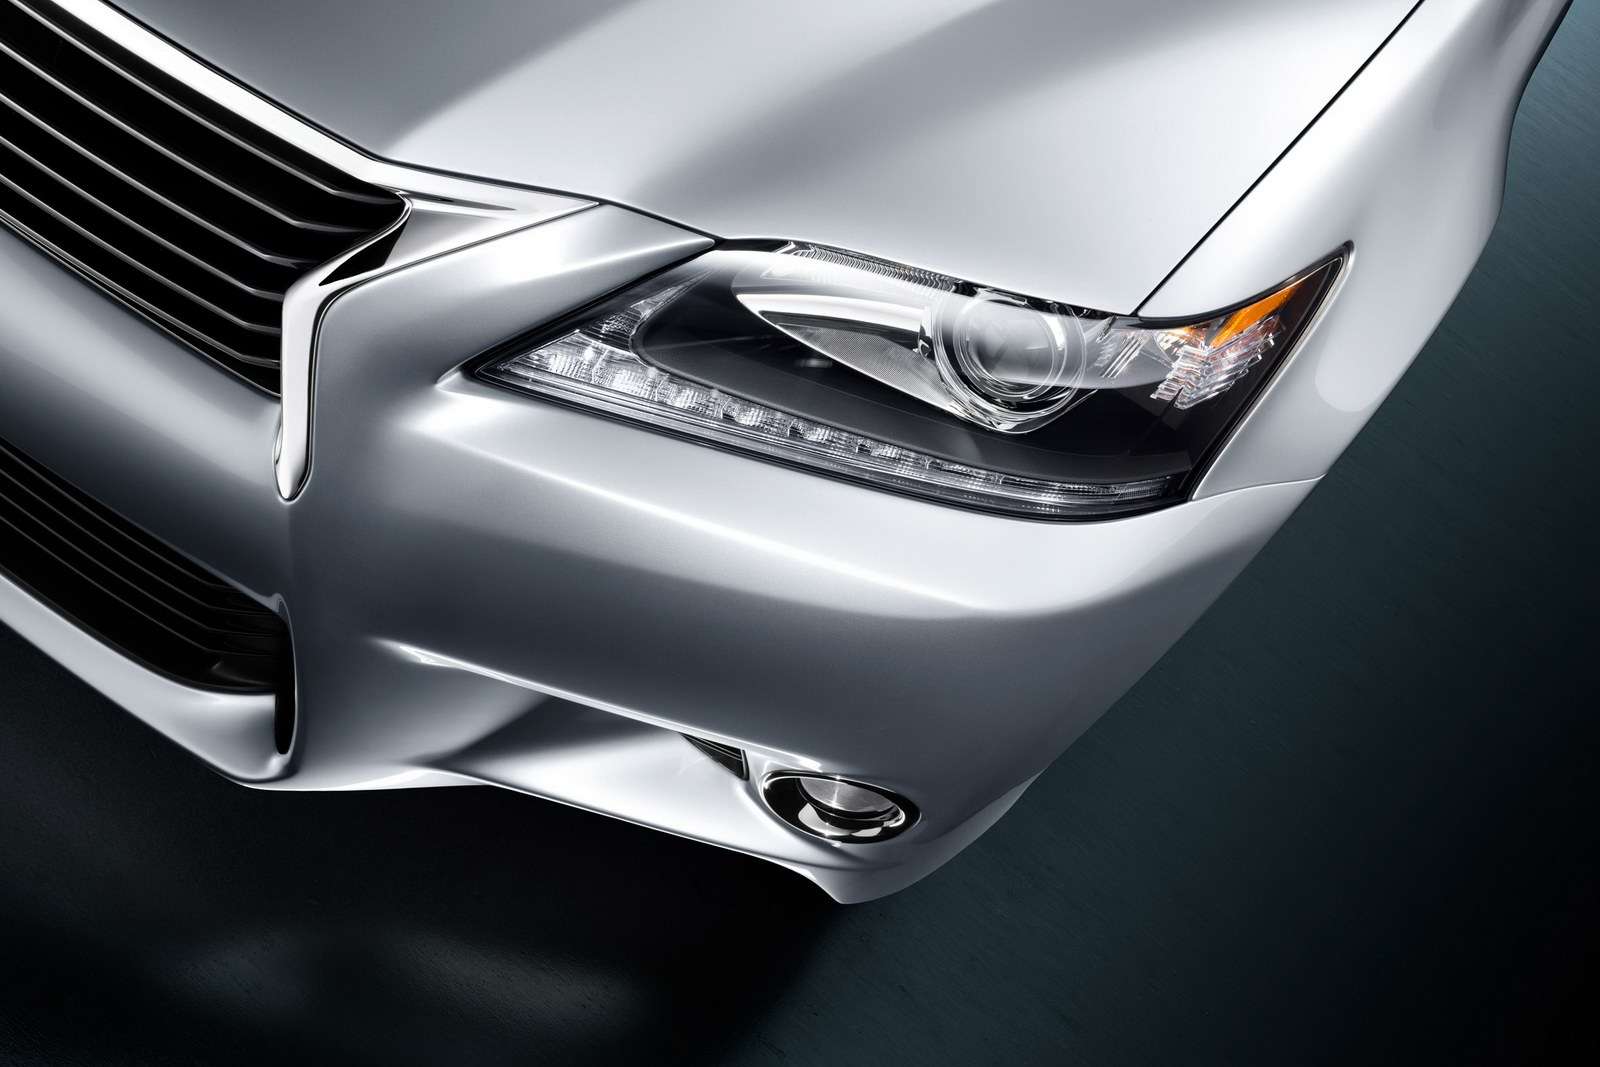 2013 Lexus GS oficjalnie fot sierpien 2011